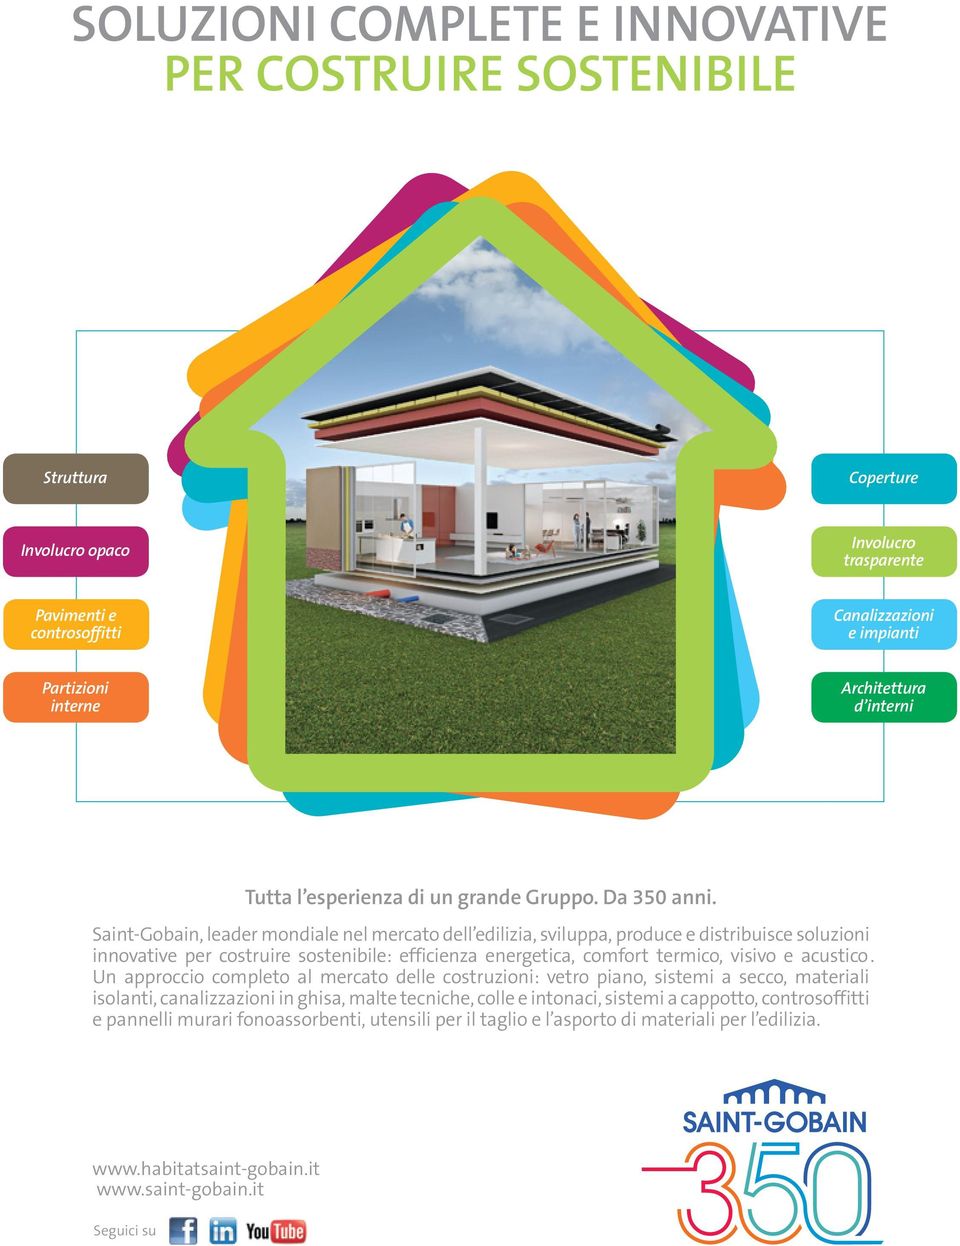 Saint-Gobain, leader mondiale nel mercato dell edilizia, sviluppa, produce e distribuisce soluzioni innovative per costruire sostenibile: efficienza energetica, comfort termico, visivo e acustico.